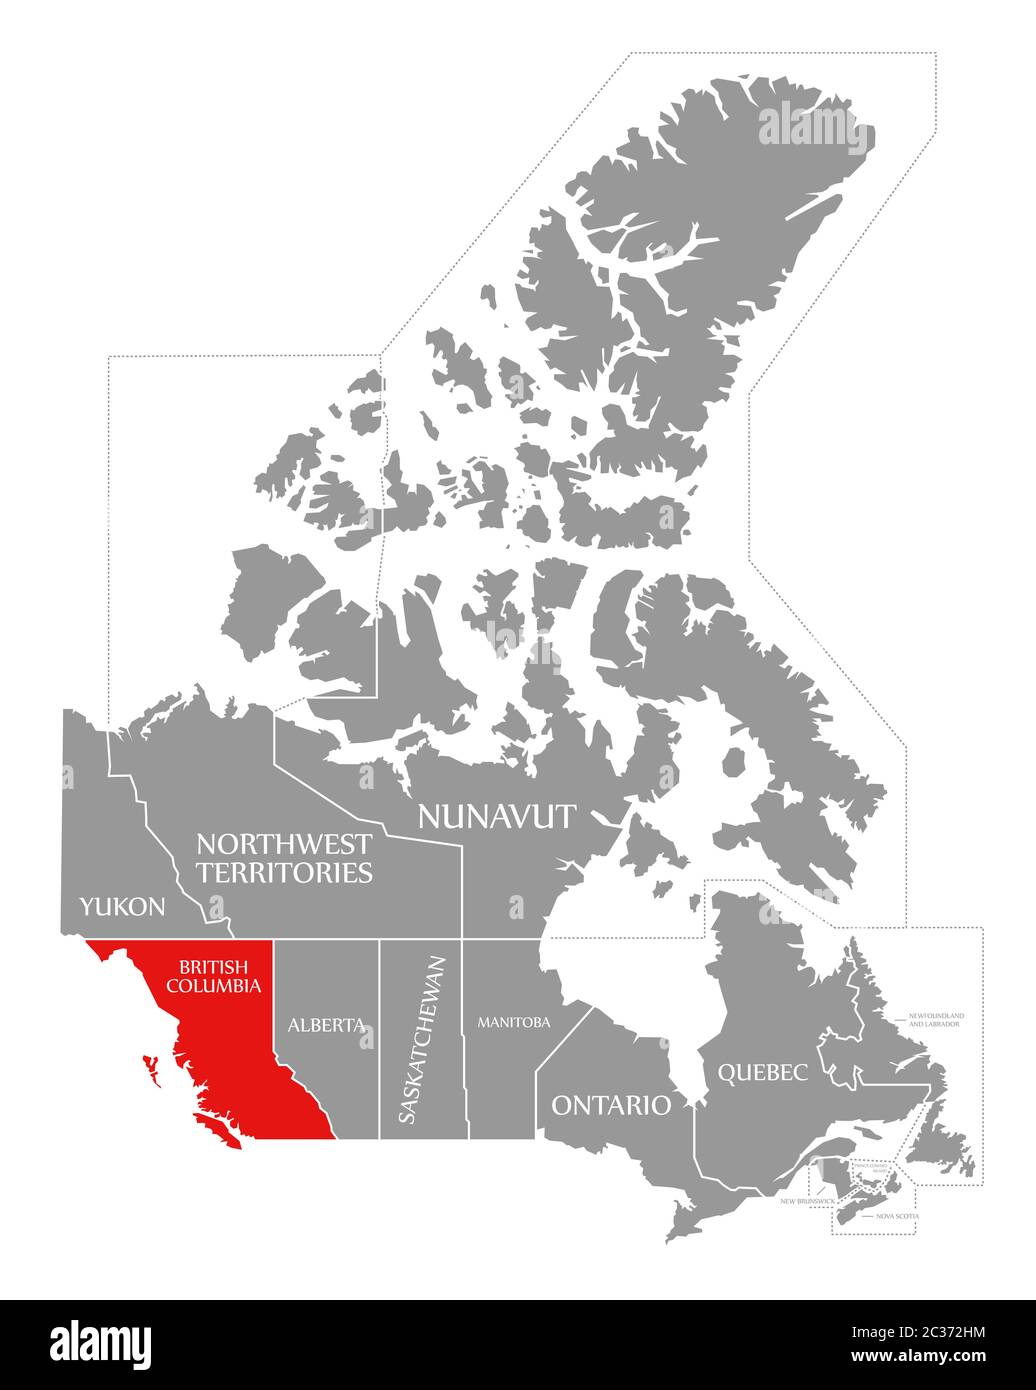 British Columbia evidenziata in rosso nella mappa del Canada Foto Stock